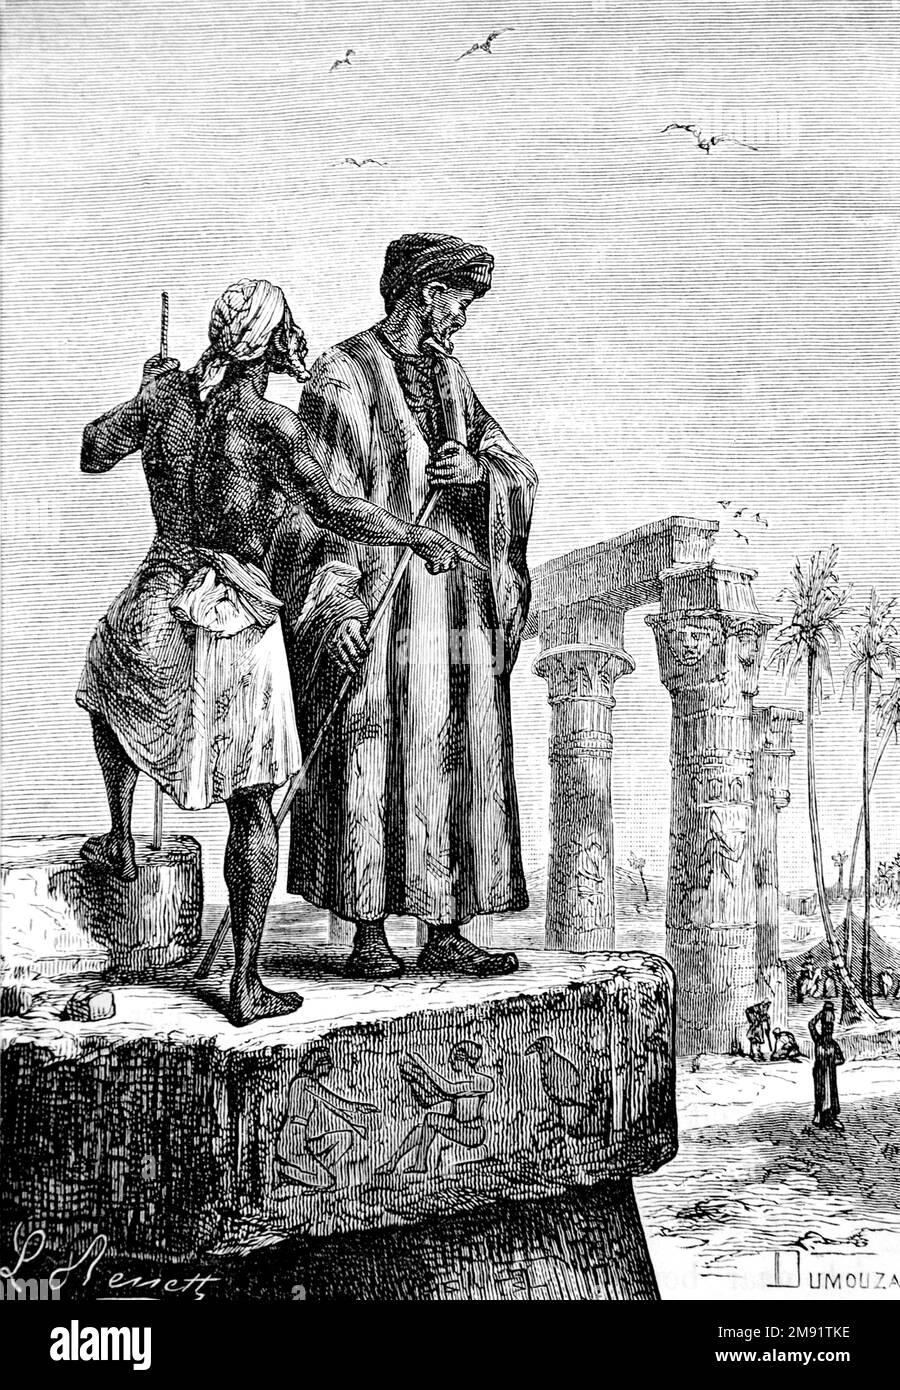 Ibn Battuta (sur la droite). Illustration de l'érudit et explorateur berbère, Abu Abdullah Muhammad ibn Battutah (1304-1368/1369), gravure de Léon Benet d'un essai de Jules Verne intitulé 'découverte de la terre', 1878 Banque D'Images